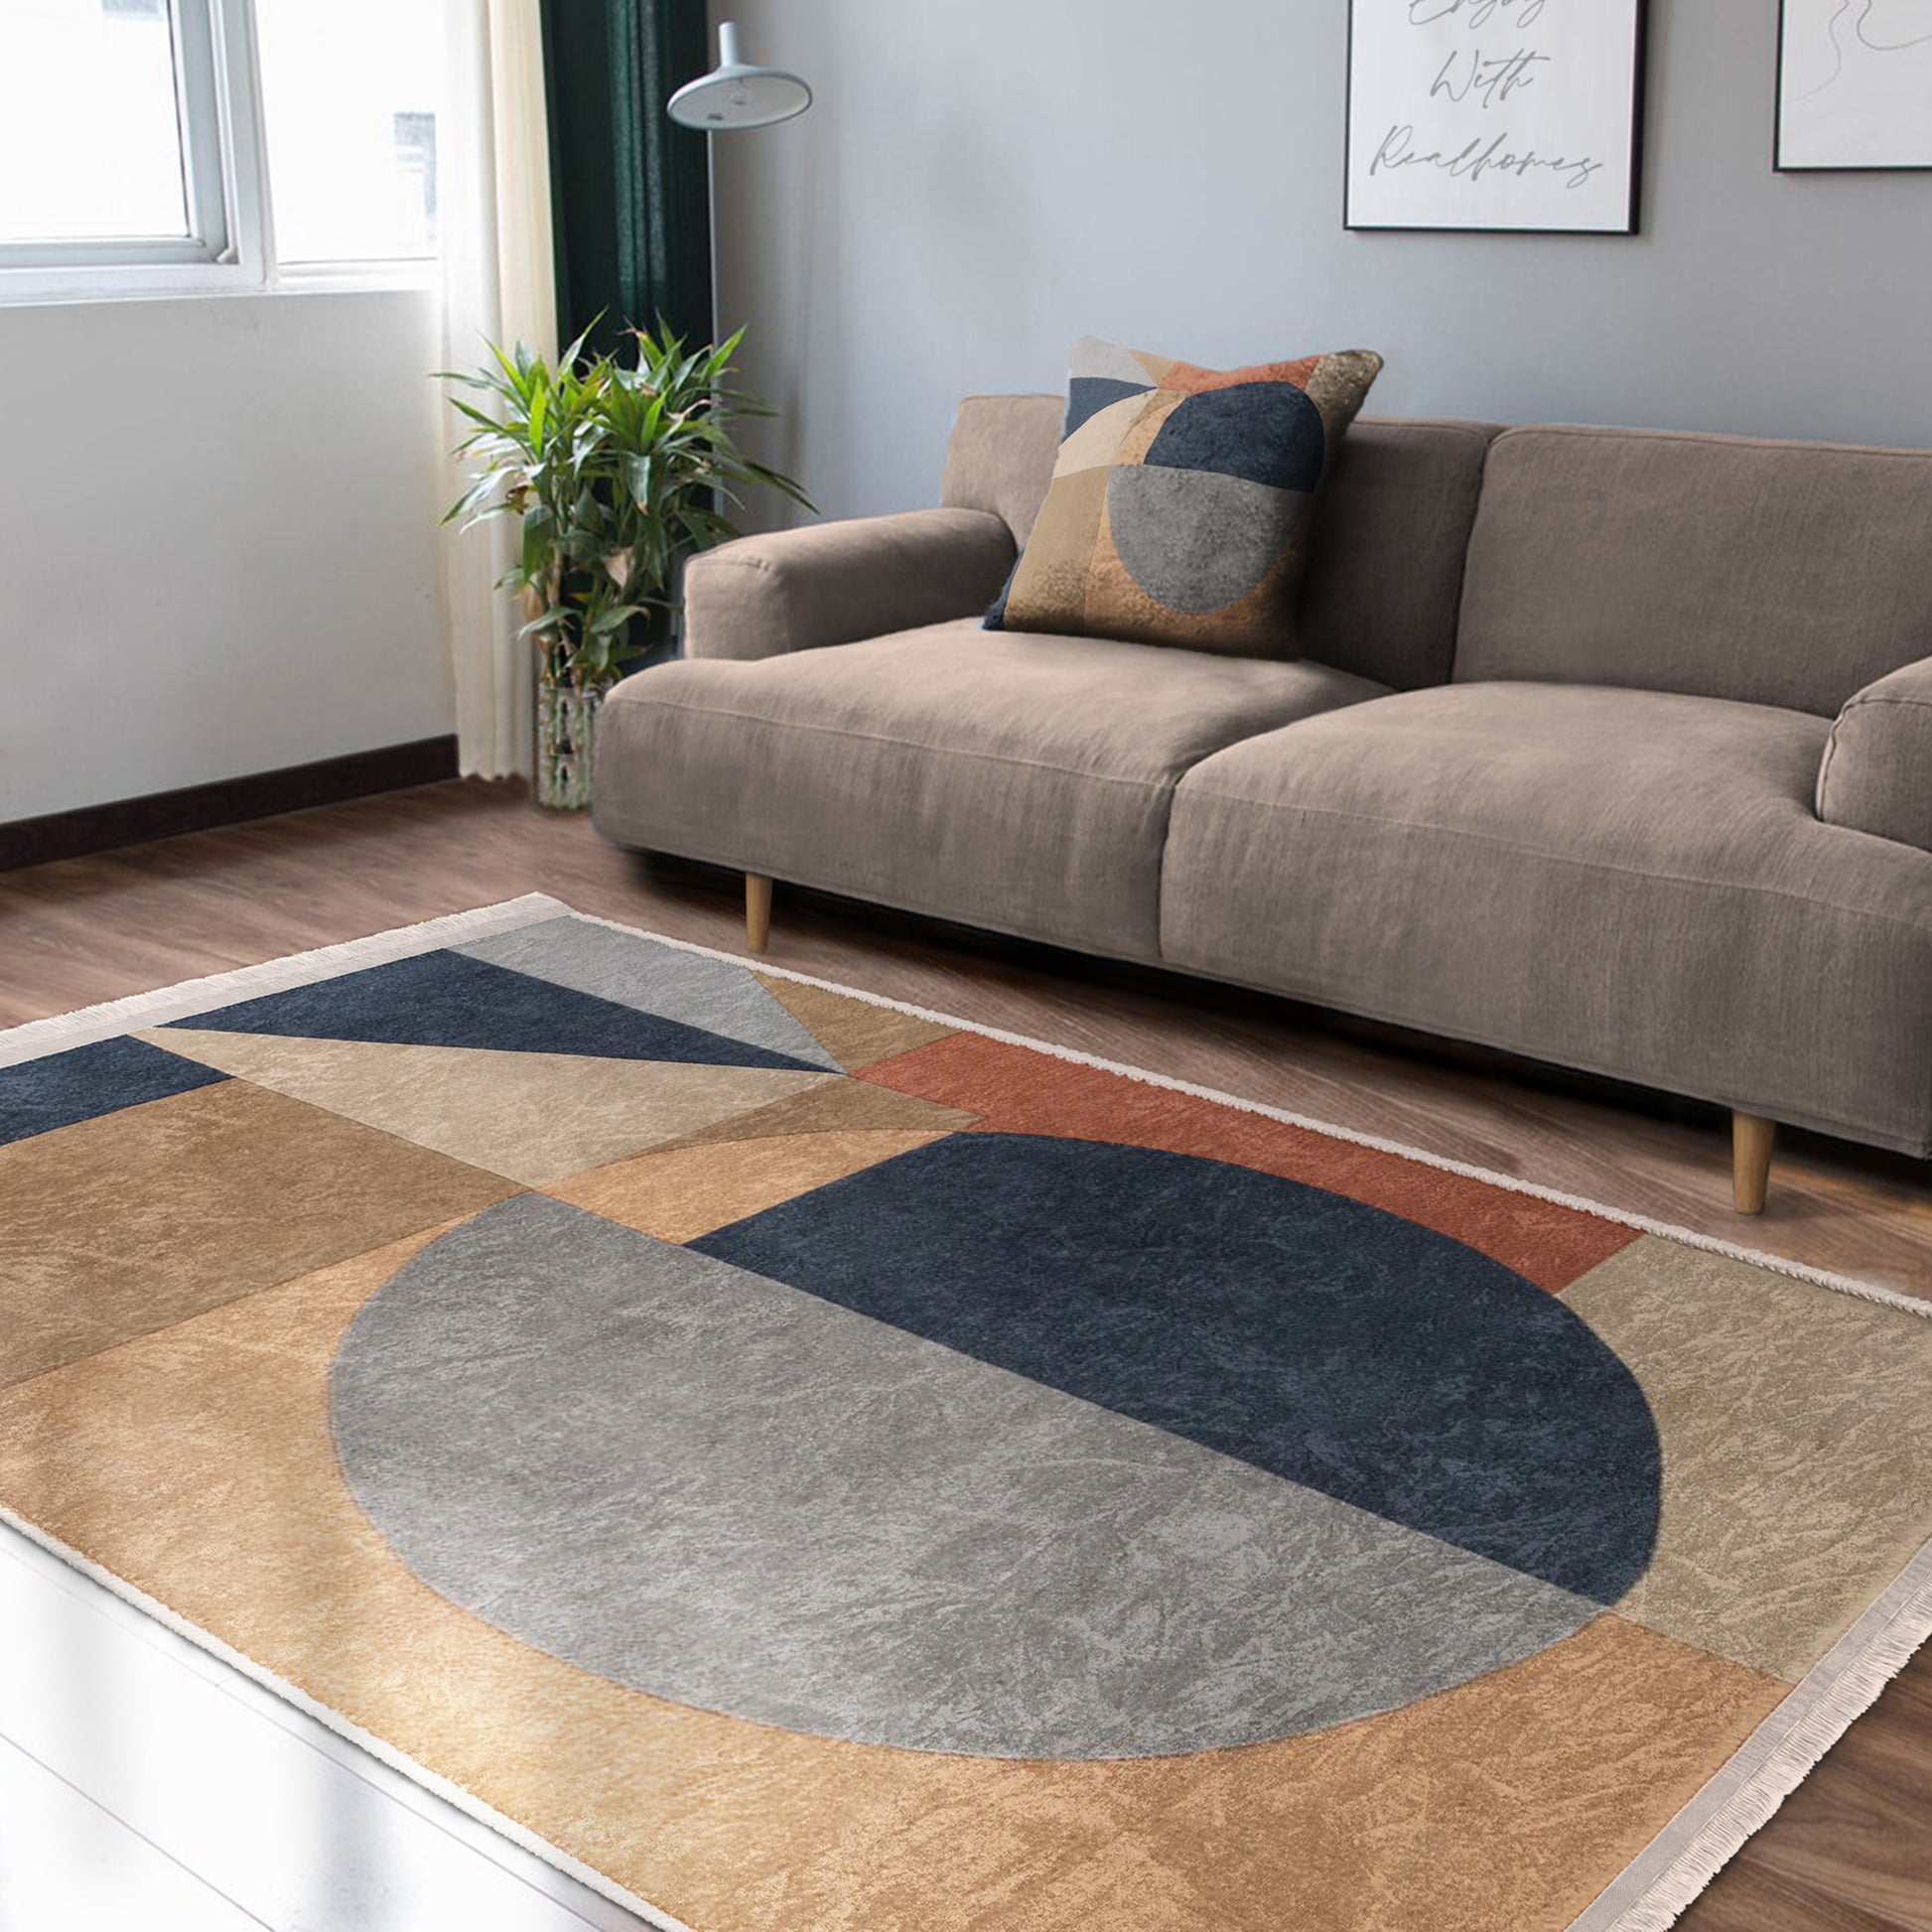 Bohemian Washable Carpet - Living Room Setting